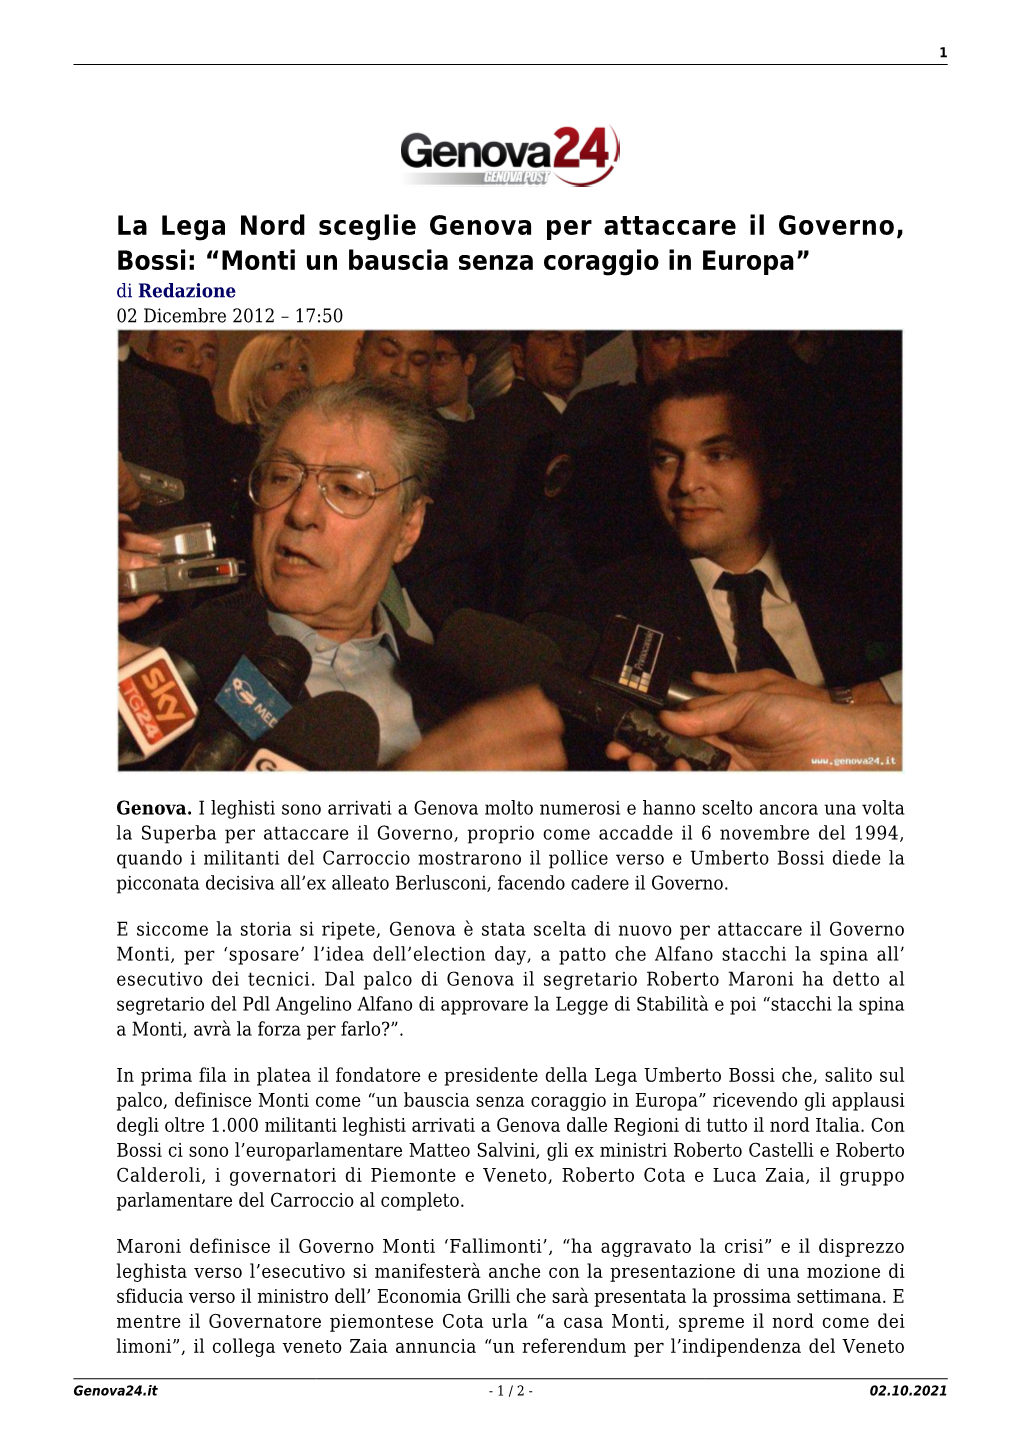 La Lega Nord Sceglie Genova Per Attaccare Il Governo, Bossi: “Monti Un Bauscia Senza Coraggio in Europa” Di Redazione 02 Dicembre 2012 – 17:50